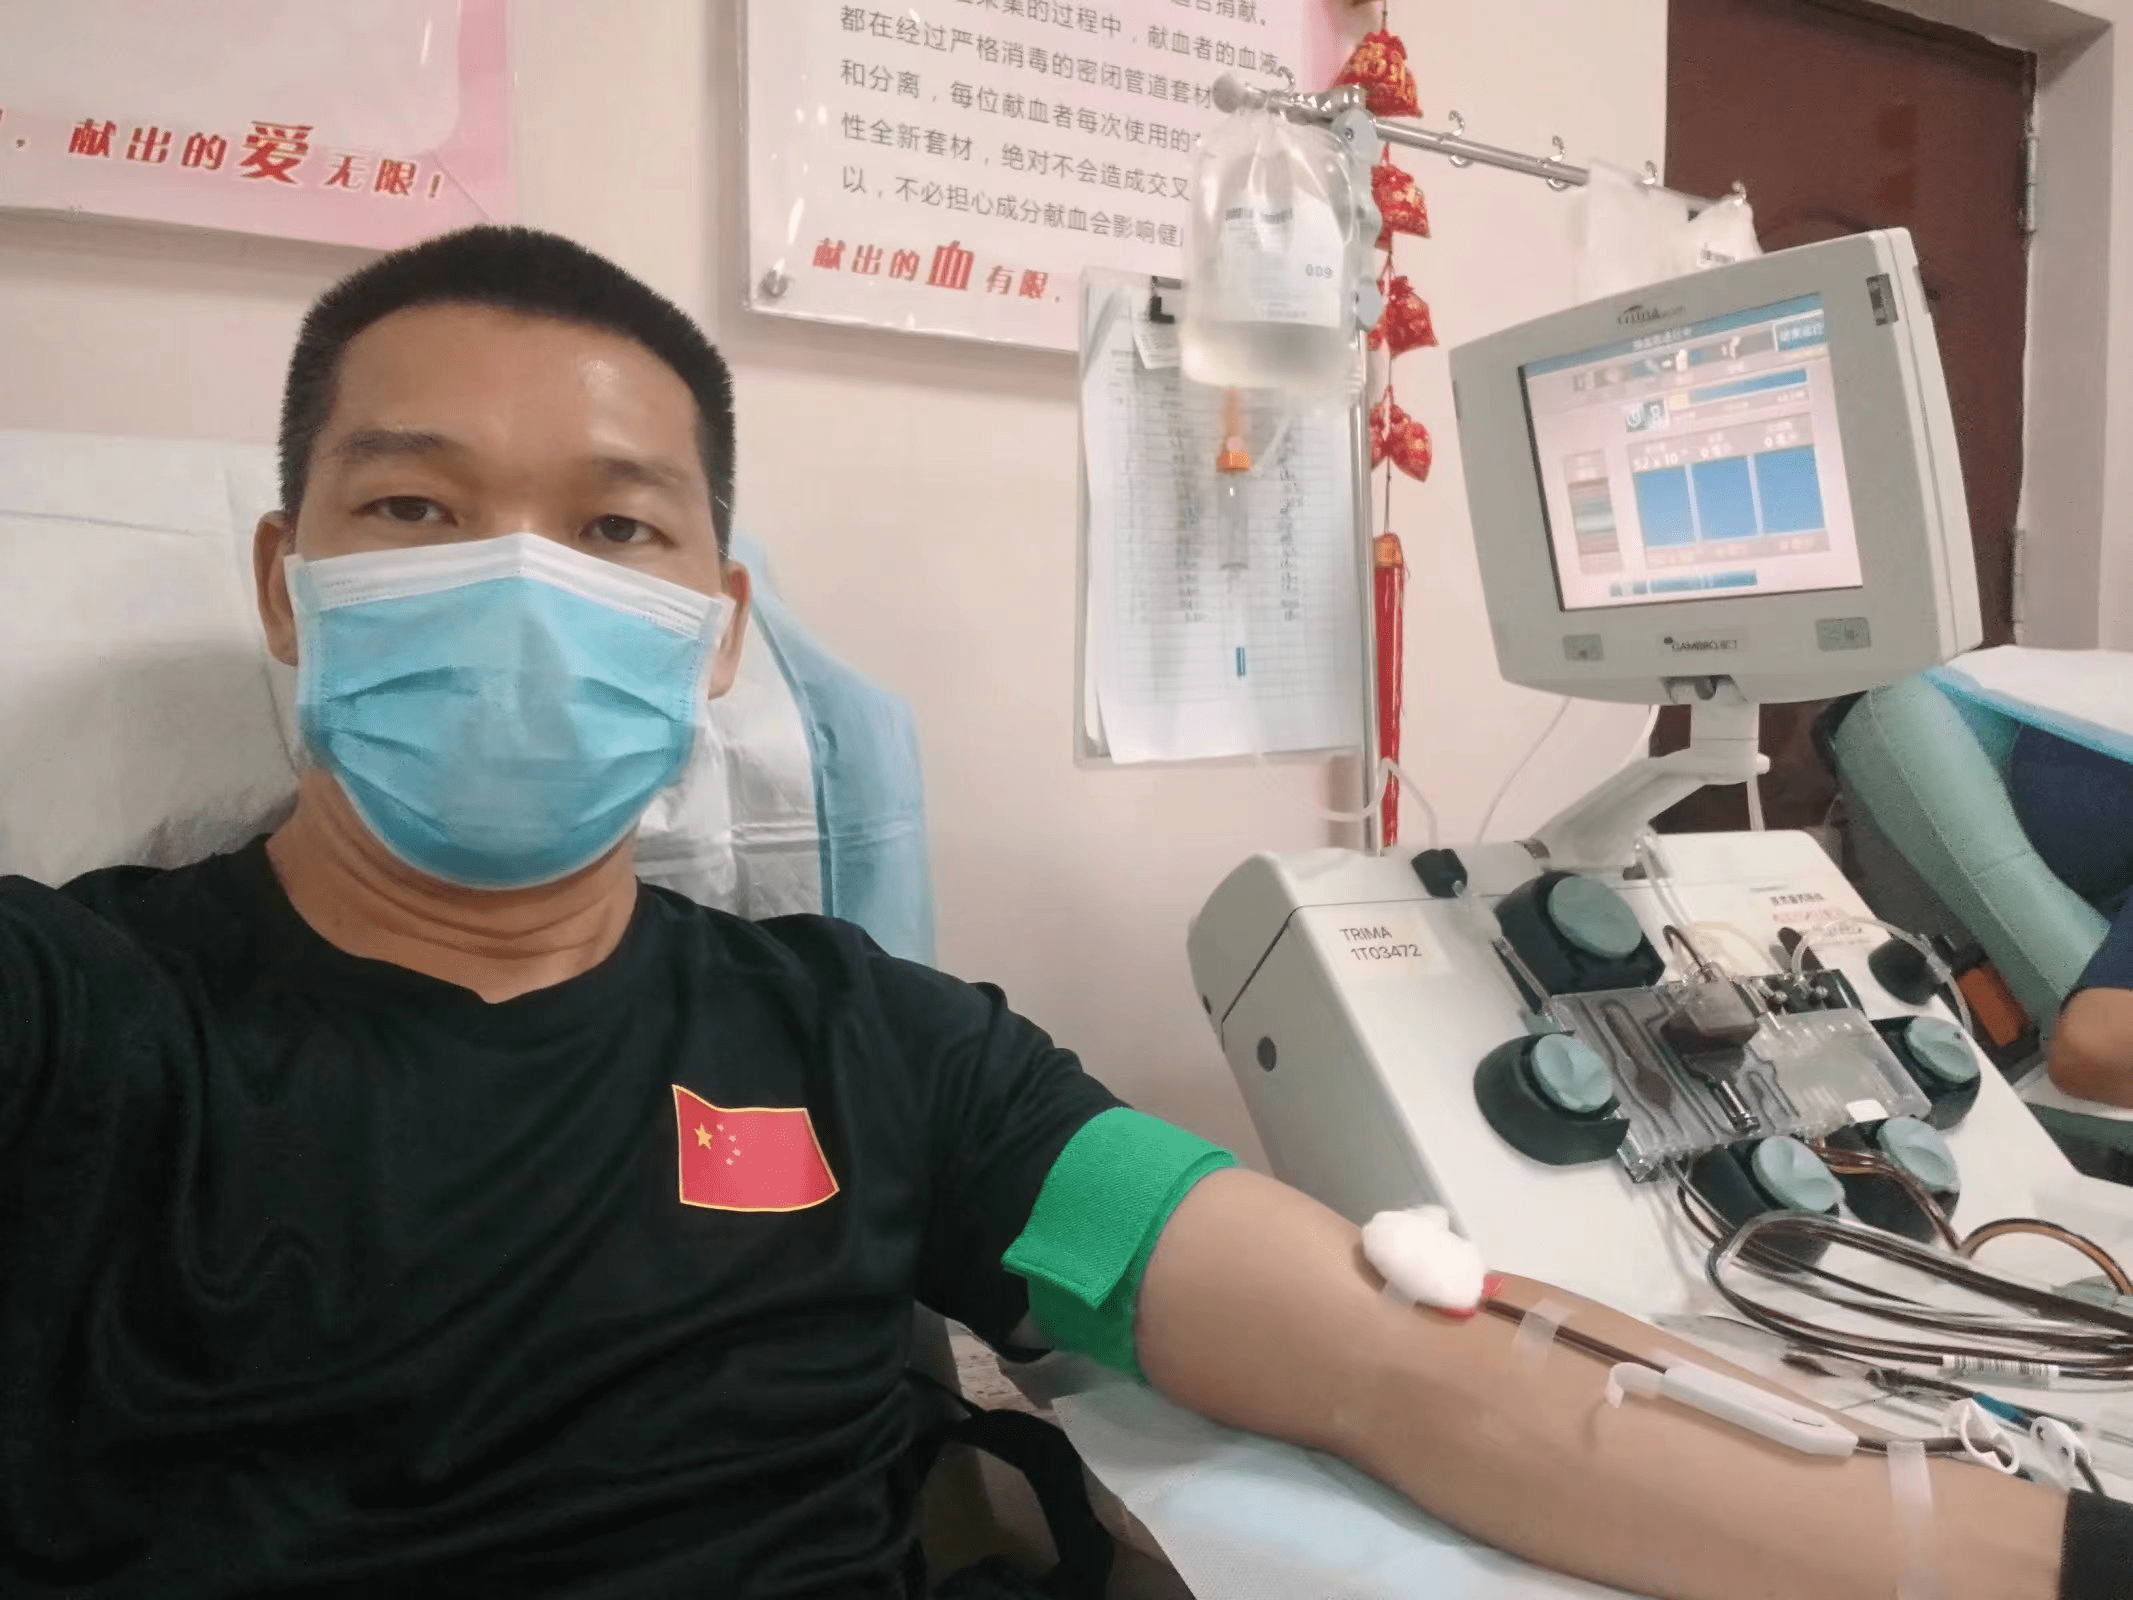 广州血液中心临床输血研究所国际输血协会在线文献报告会-中国输血协会